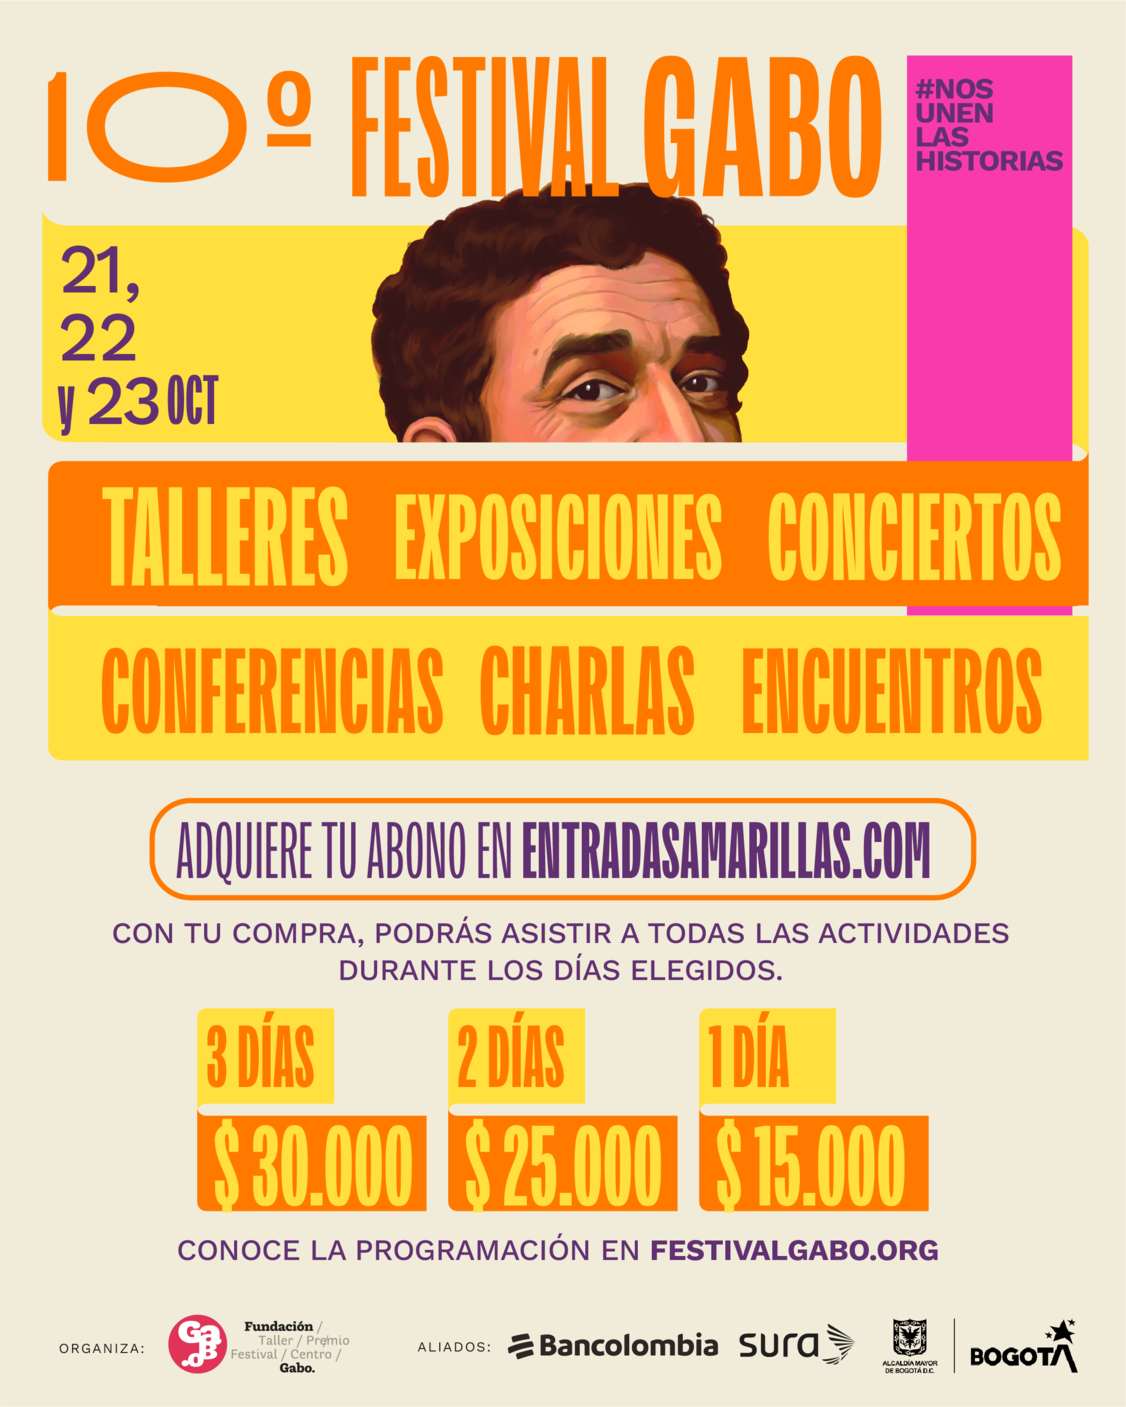 Boletería Festival Gabo 3 días $30 mil, 2 días $25 mil, 1 día $15 mil, adquiere tu abono en entradasamarillas.com